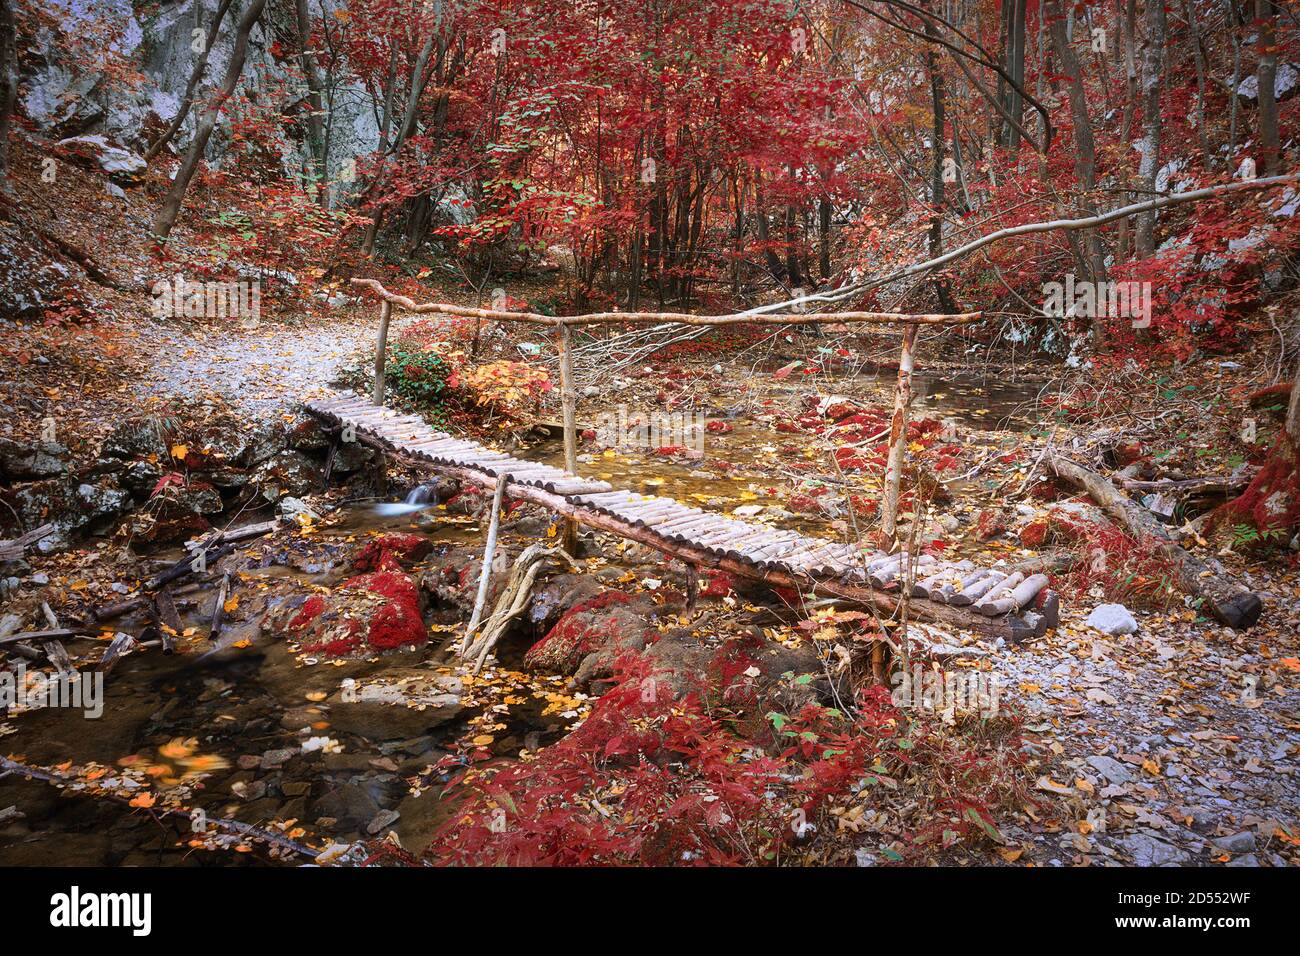 wooden bridge in Cheile Nerei Beusnita, Romania, image taken in fall season Stock Photo